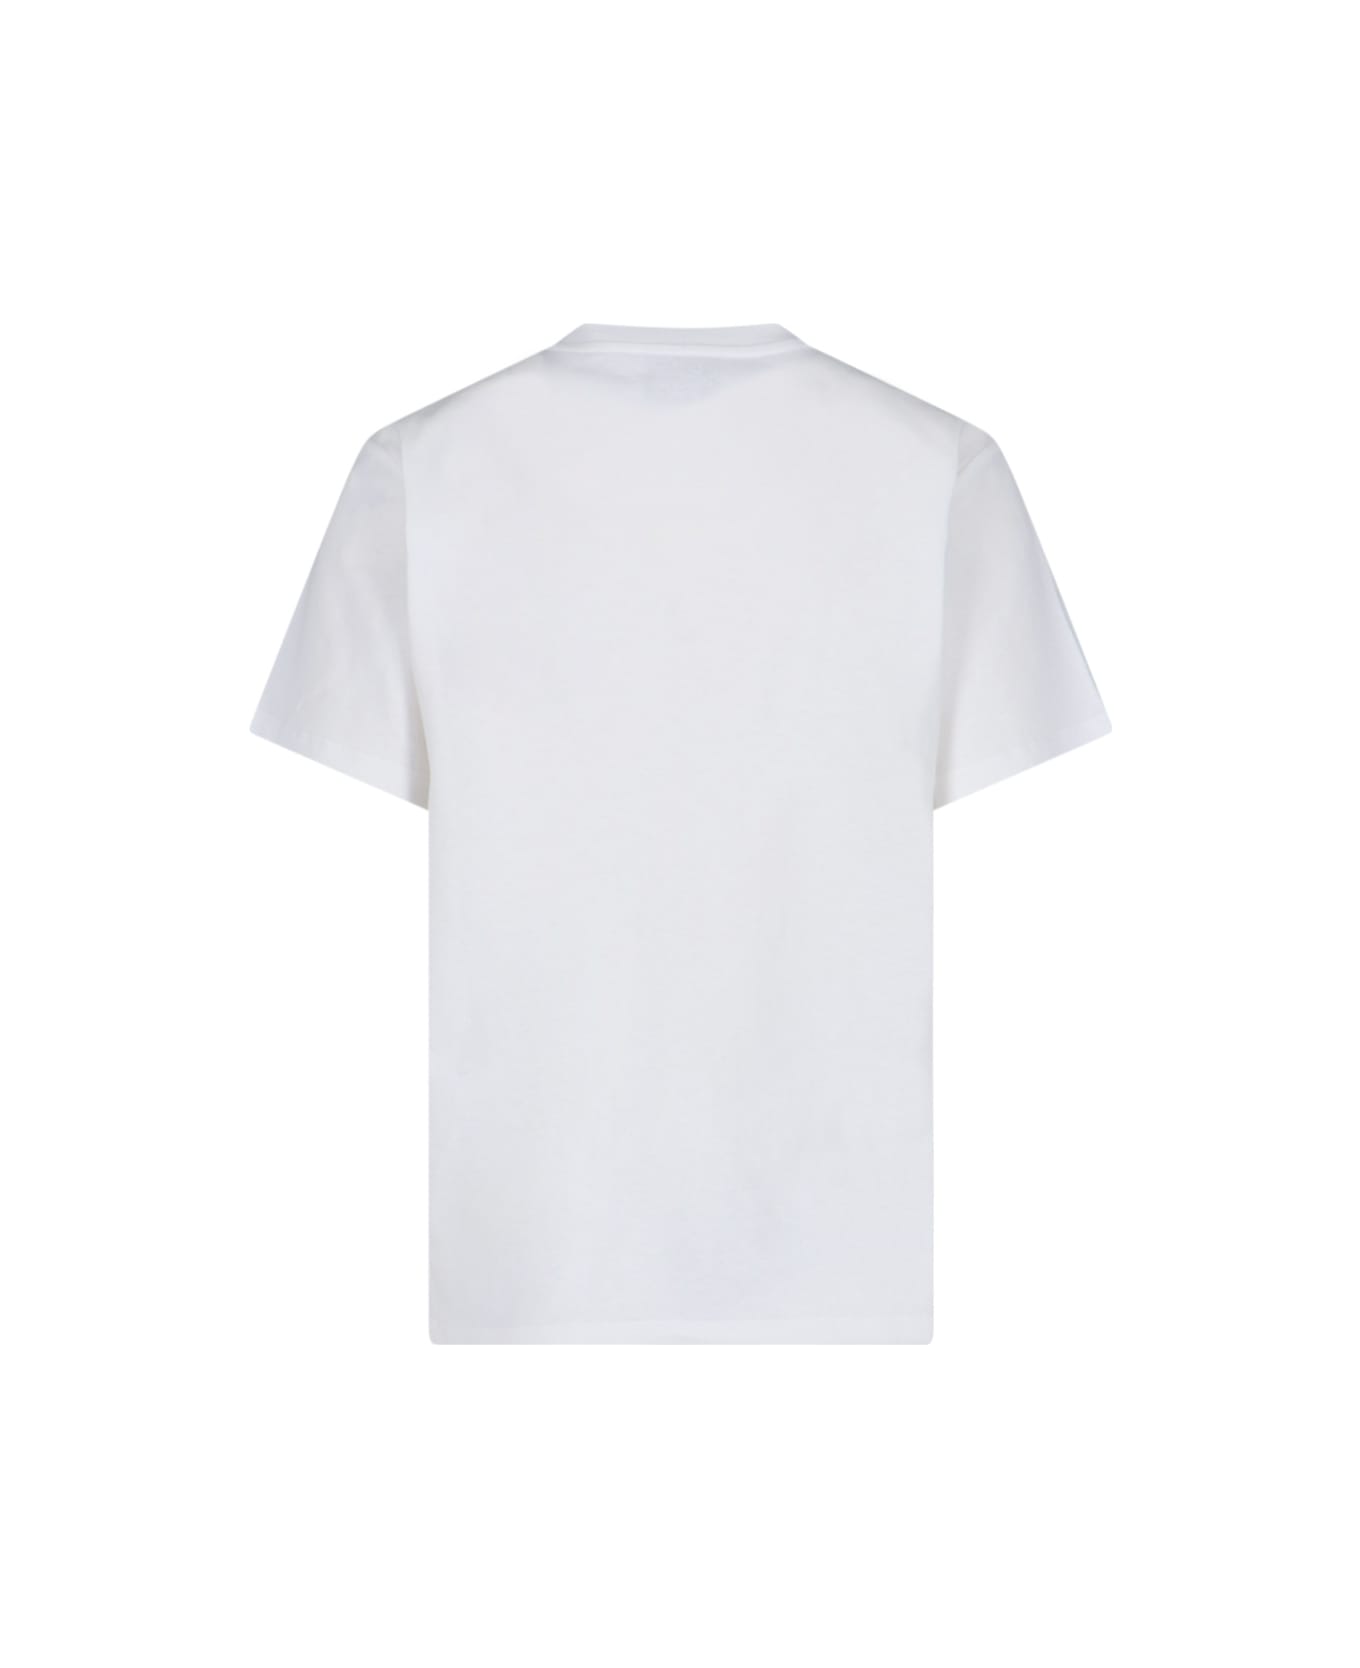 Coperni Logo T-shirt - White